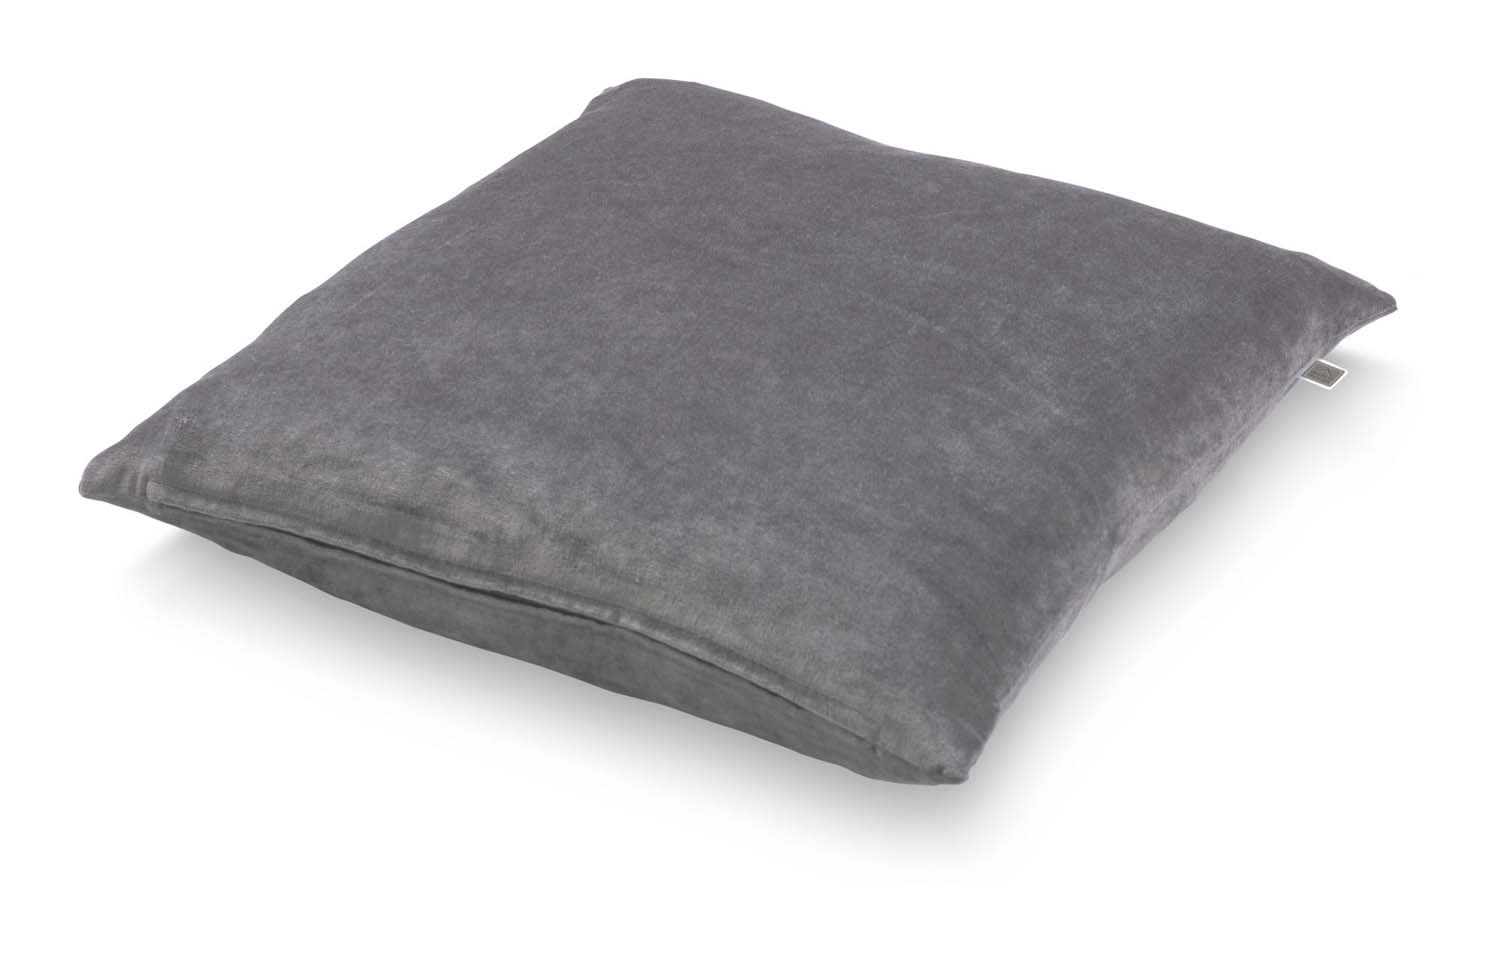 CIDO - Kussenhoes velvet donker grijs 45x45 cm